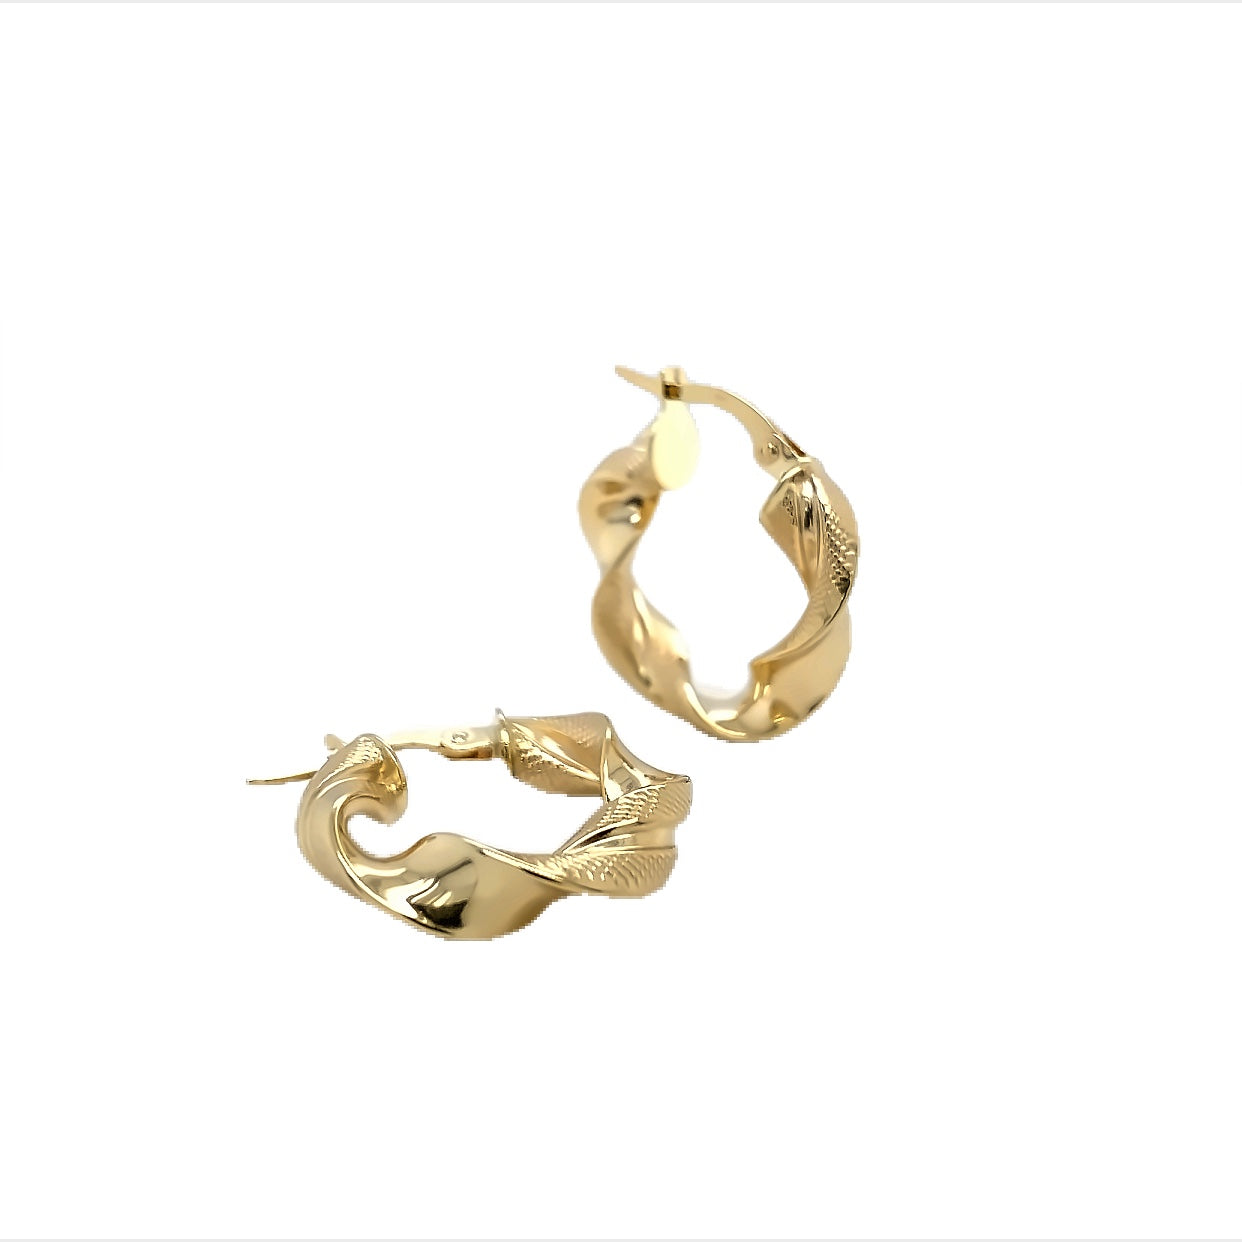 10 Karat Yellow Gold Small Twist Hoop Earrings